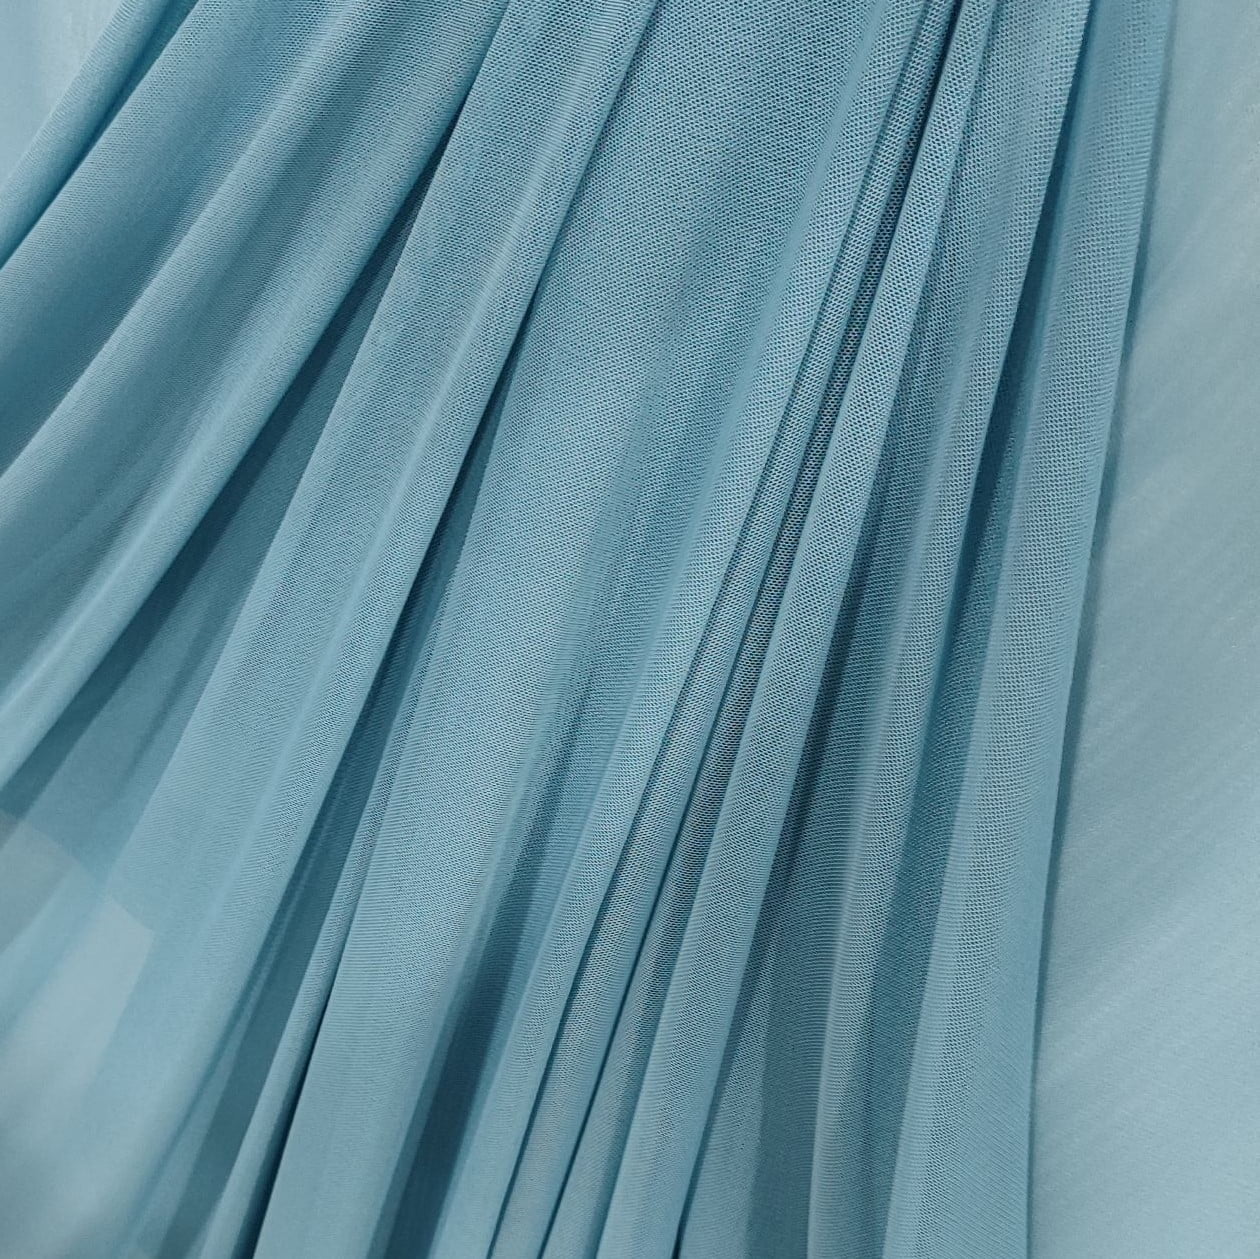 Tecido Tule de Malha Azul Acinzentado  - Empório dos Tecidos 